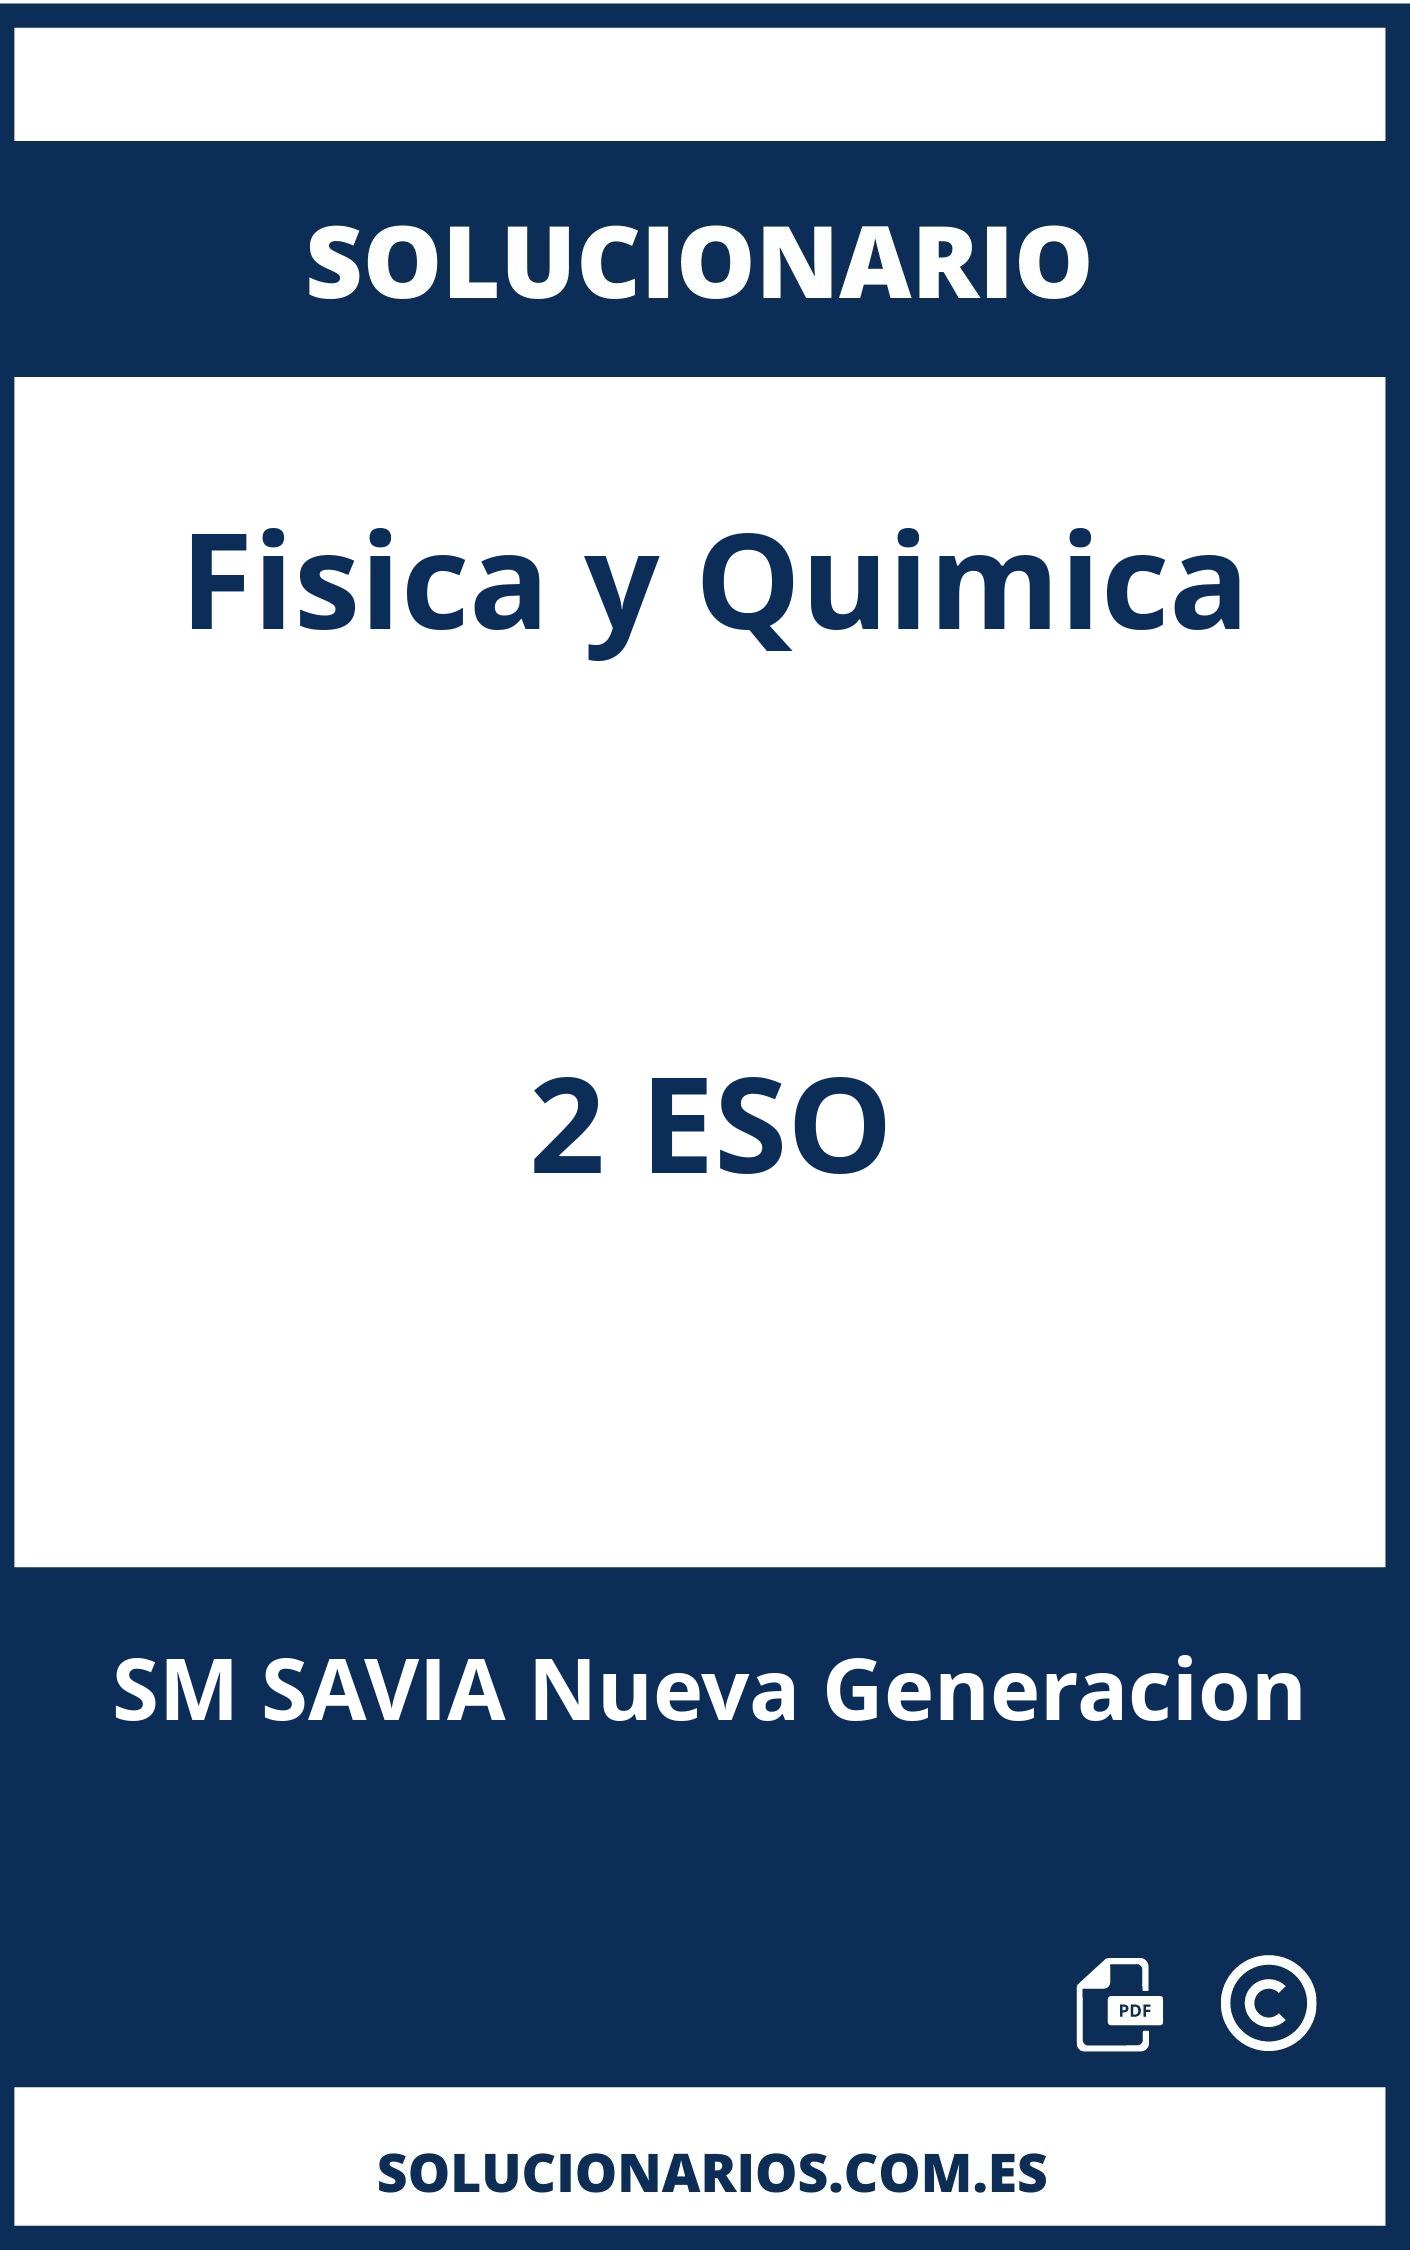 Solucionario Fisica y Quimica 2 ESO SM SAVIA Nueva Generacion